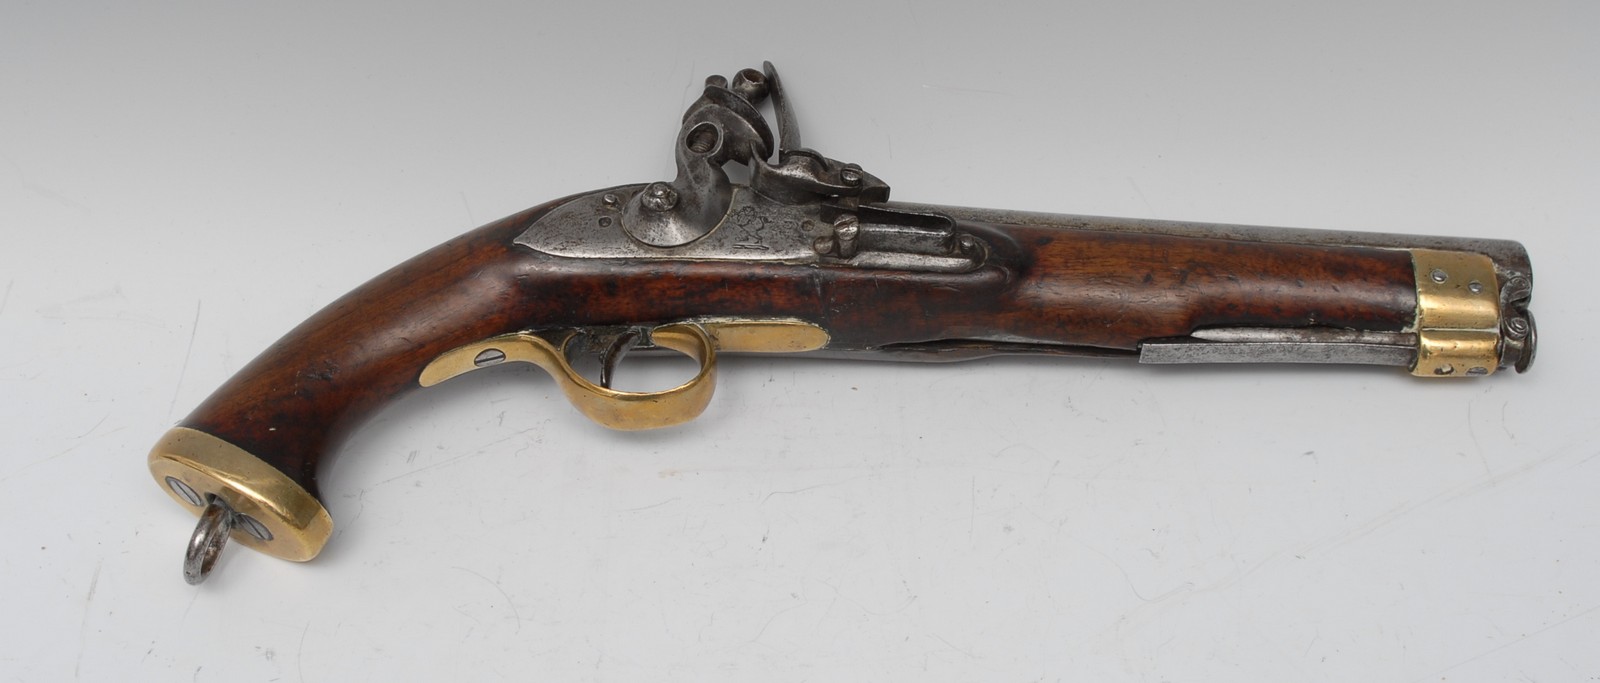 A George III East India Company flintlock pistol, 21.